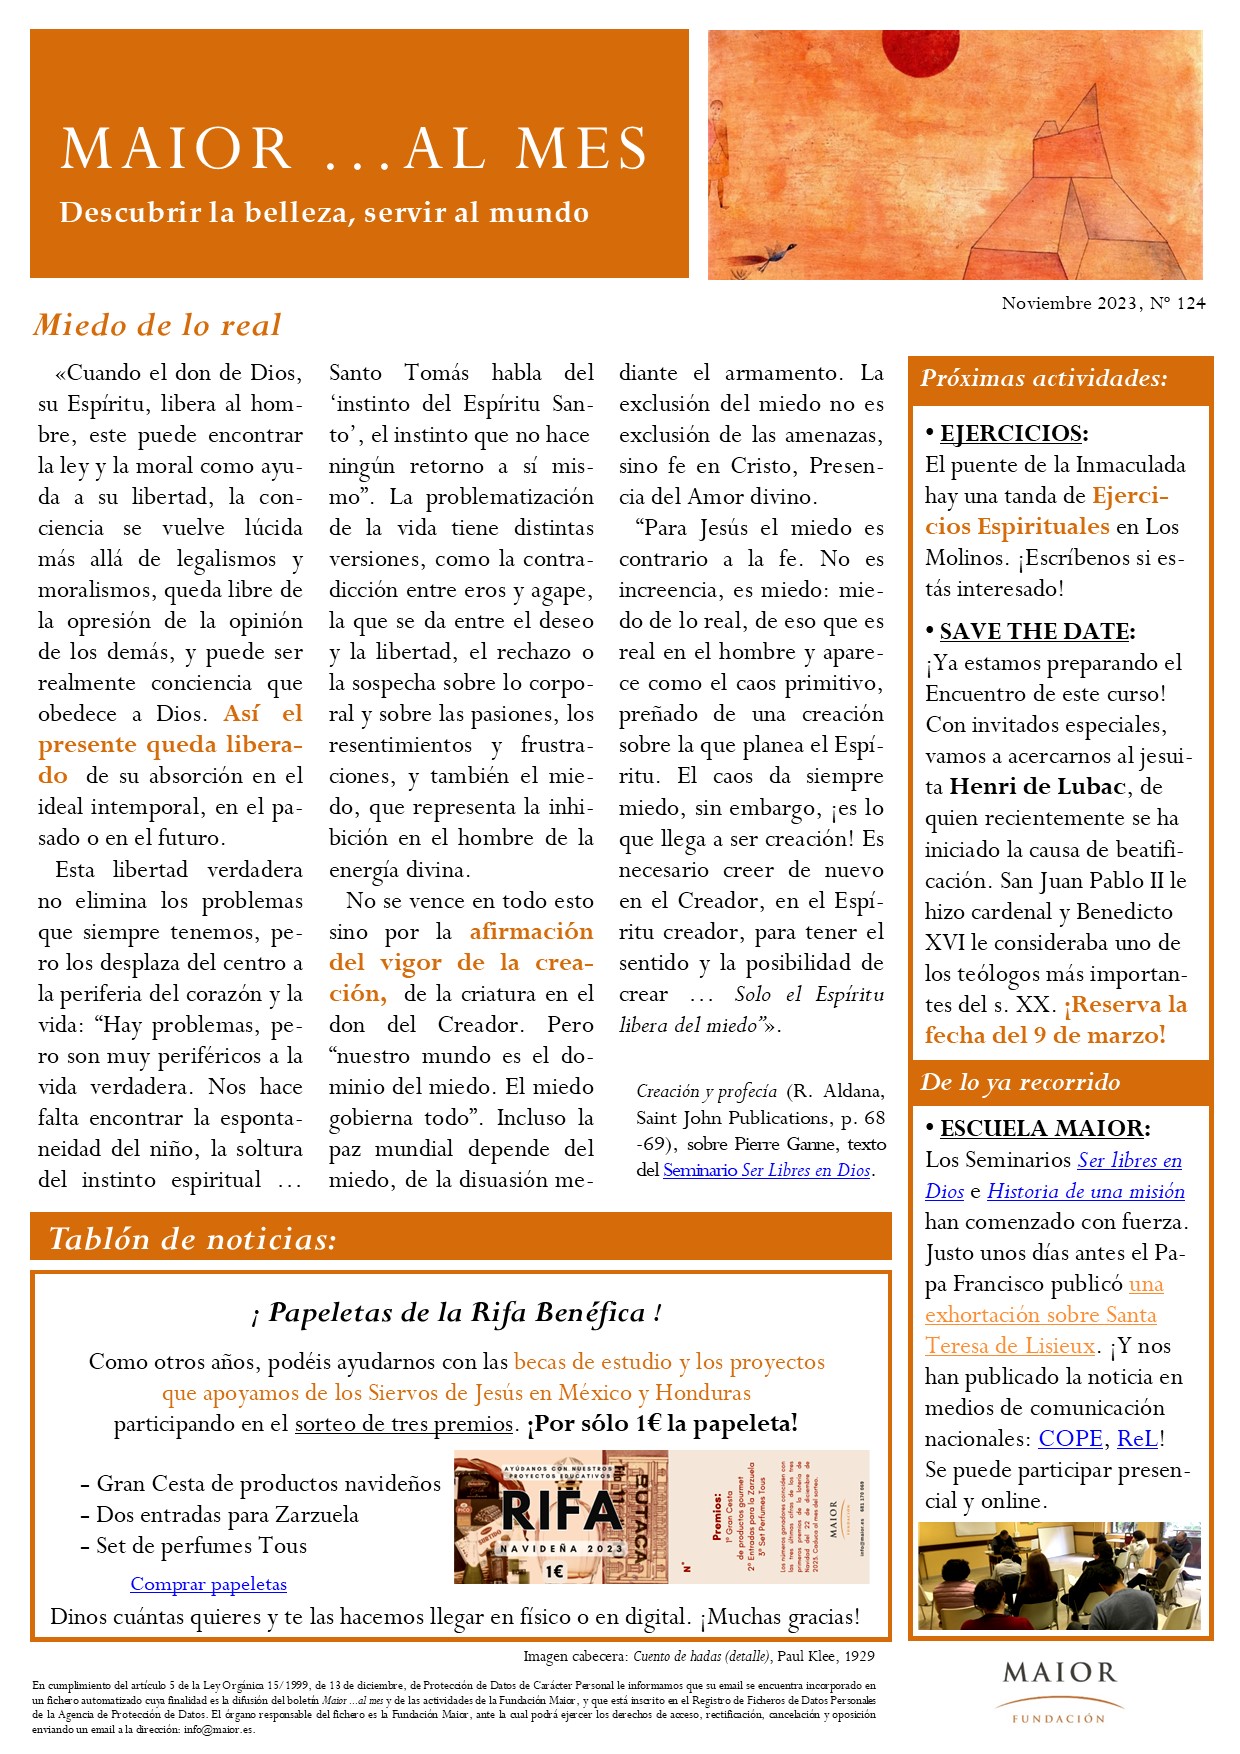 Boletín mensual de noticias y actividades de la Fundación Maior. Edición de noviembre 2023